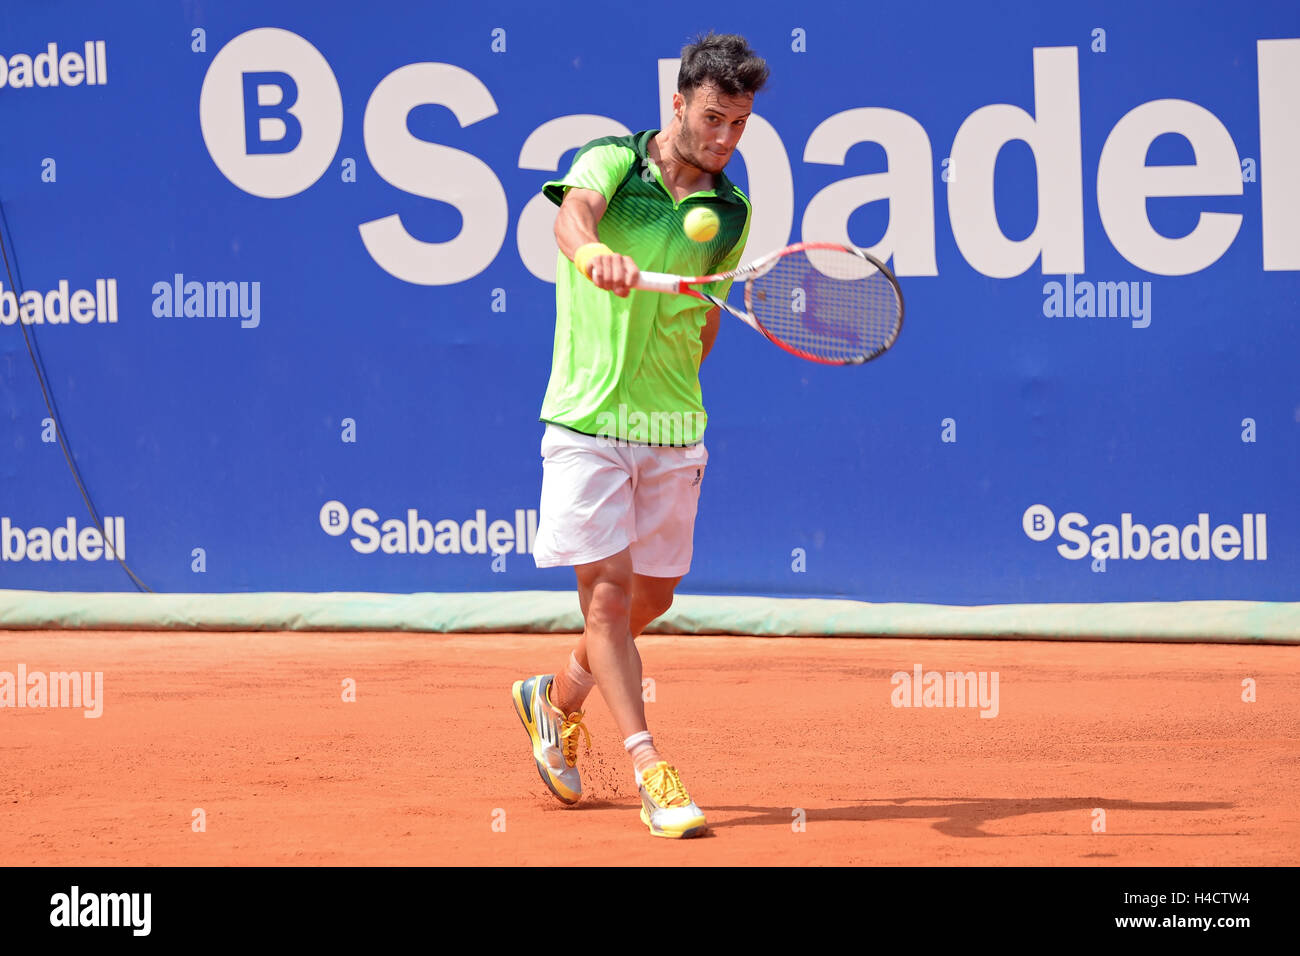 Barcellona - Apr 18: Javier Marti (spagnolo giocatore di tennis) svolge in  ATP Barcelona Open Banc Sabadell Conde de Godo tournament Foto stock - Alamy